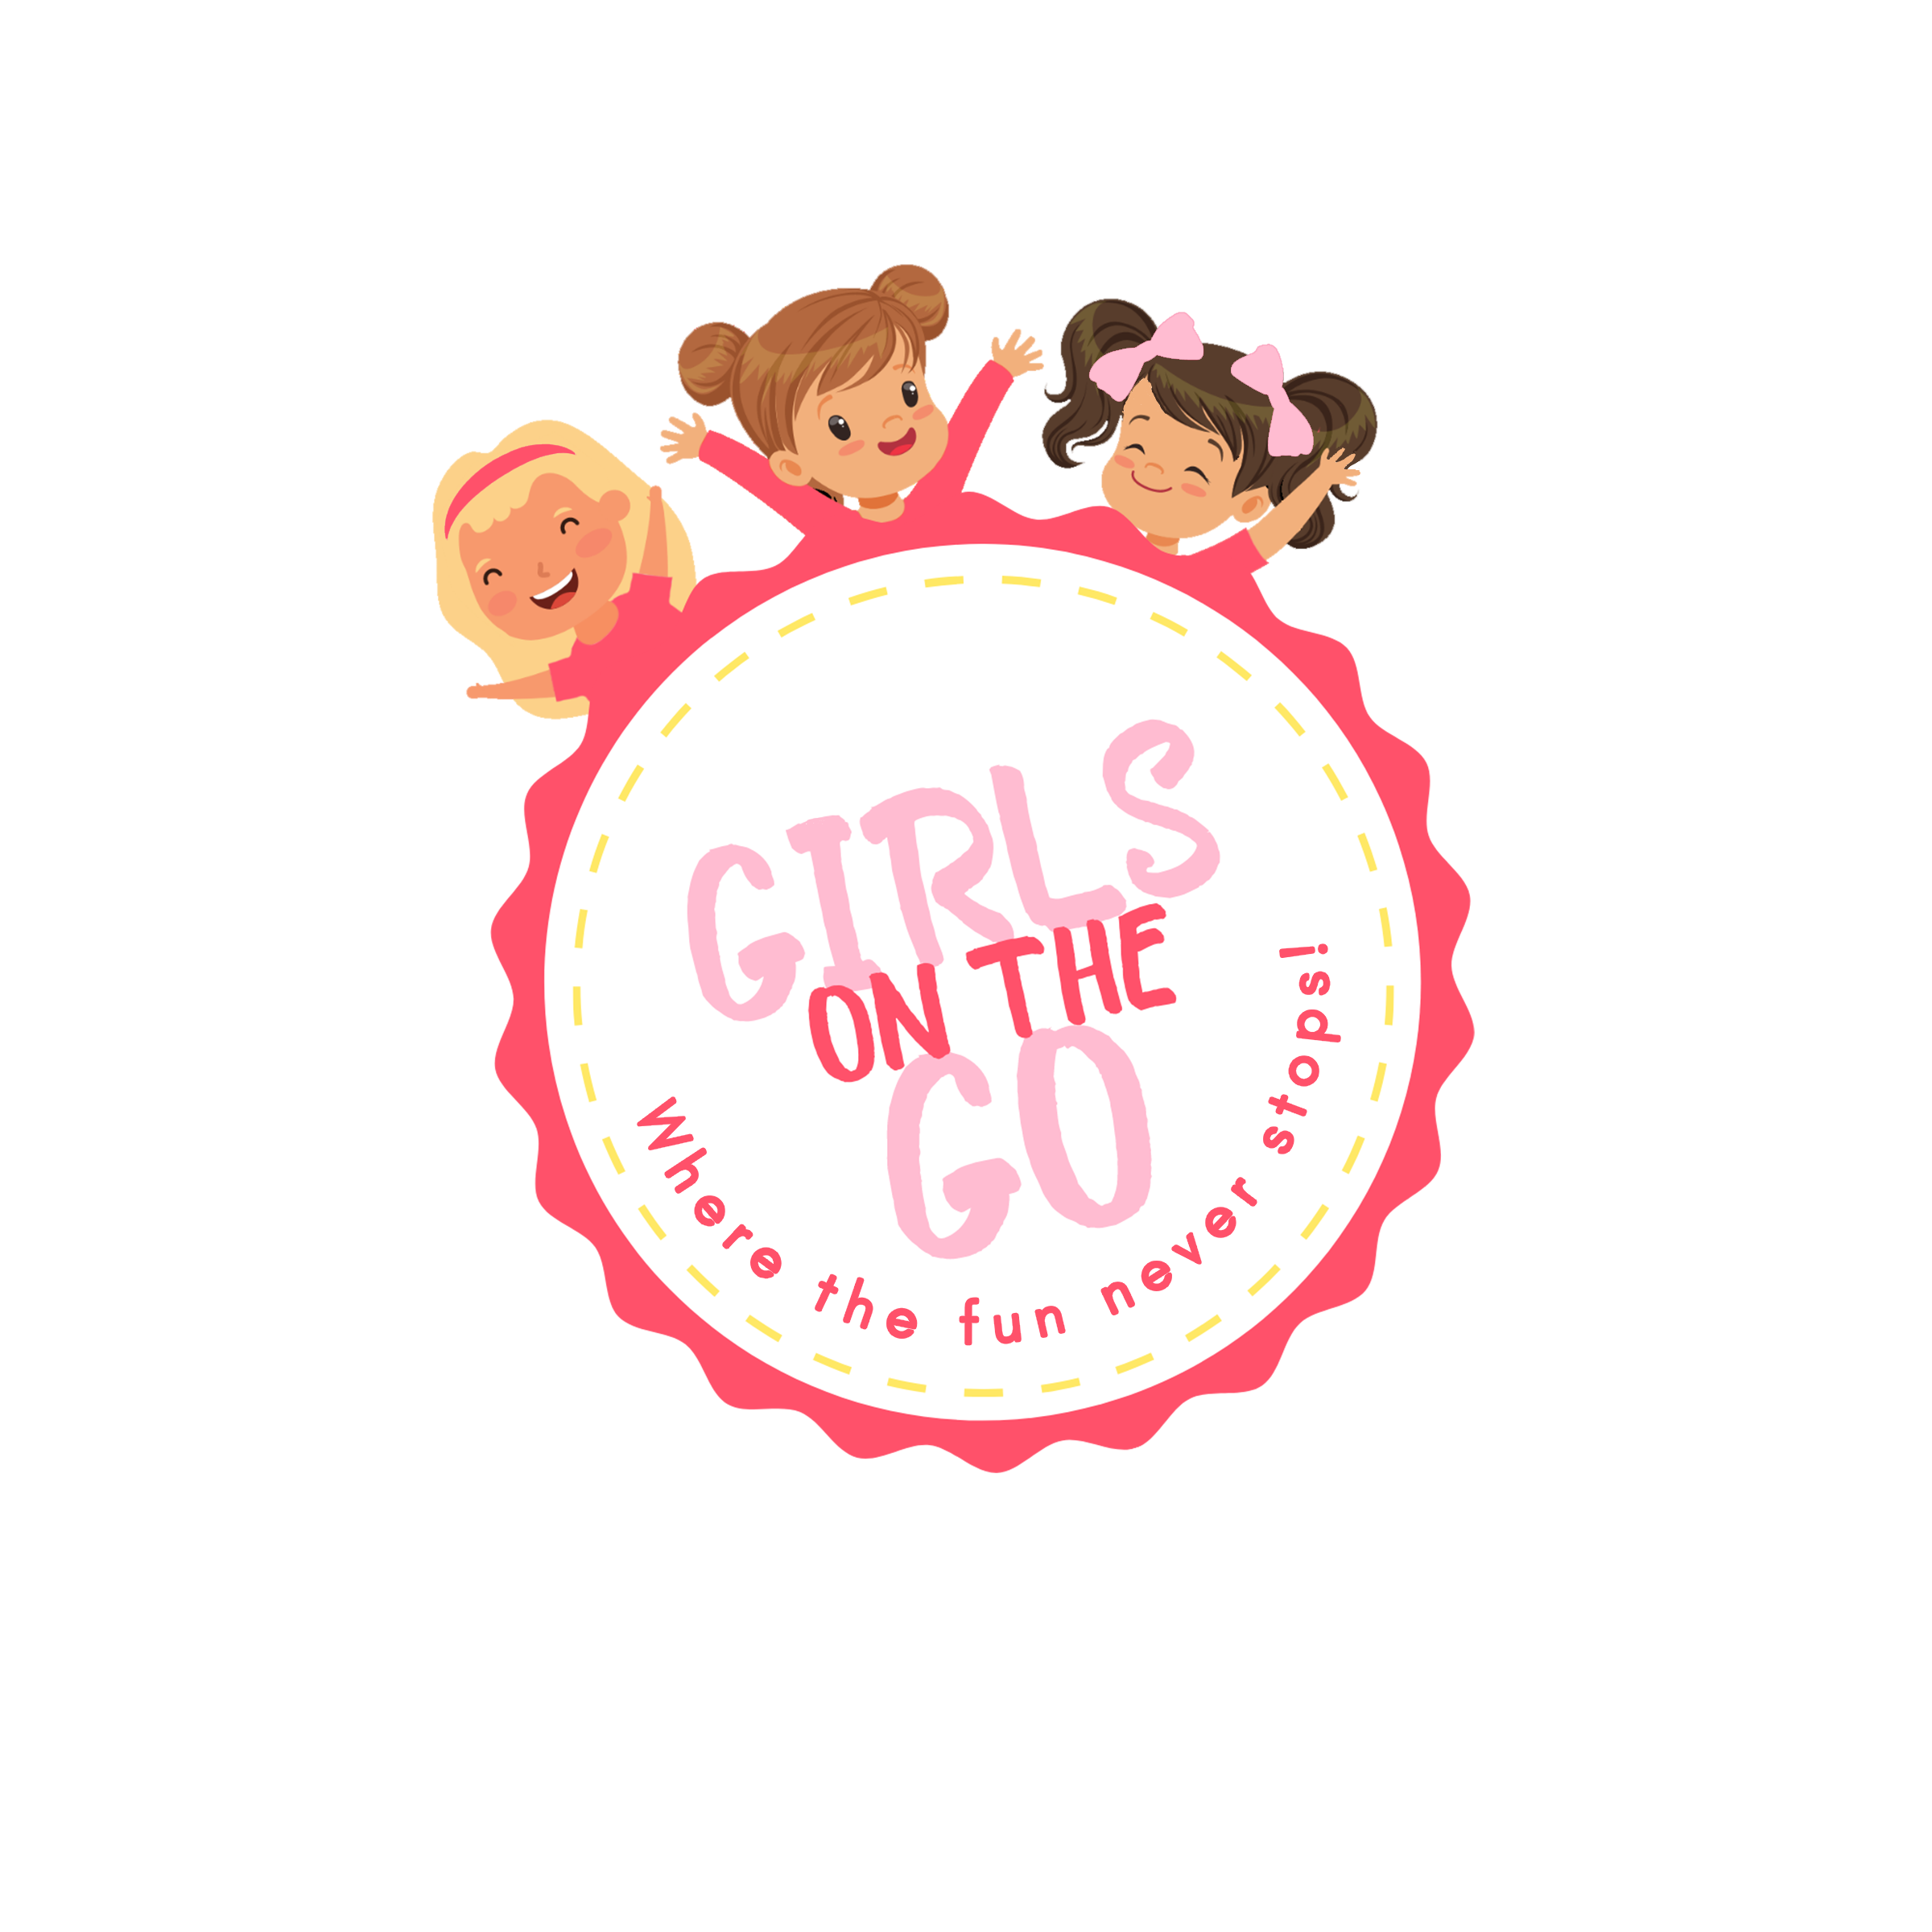 Girls on the Go logo